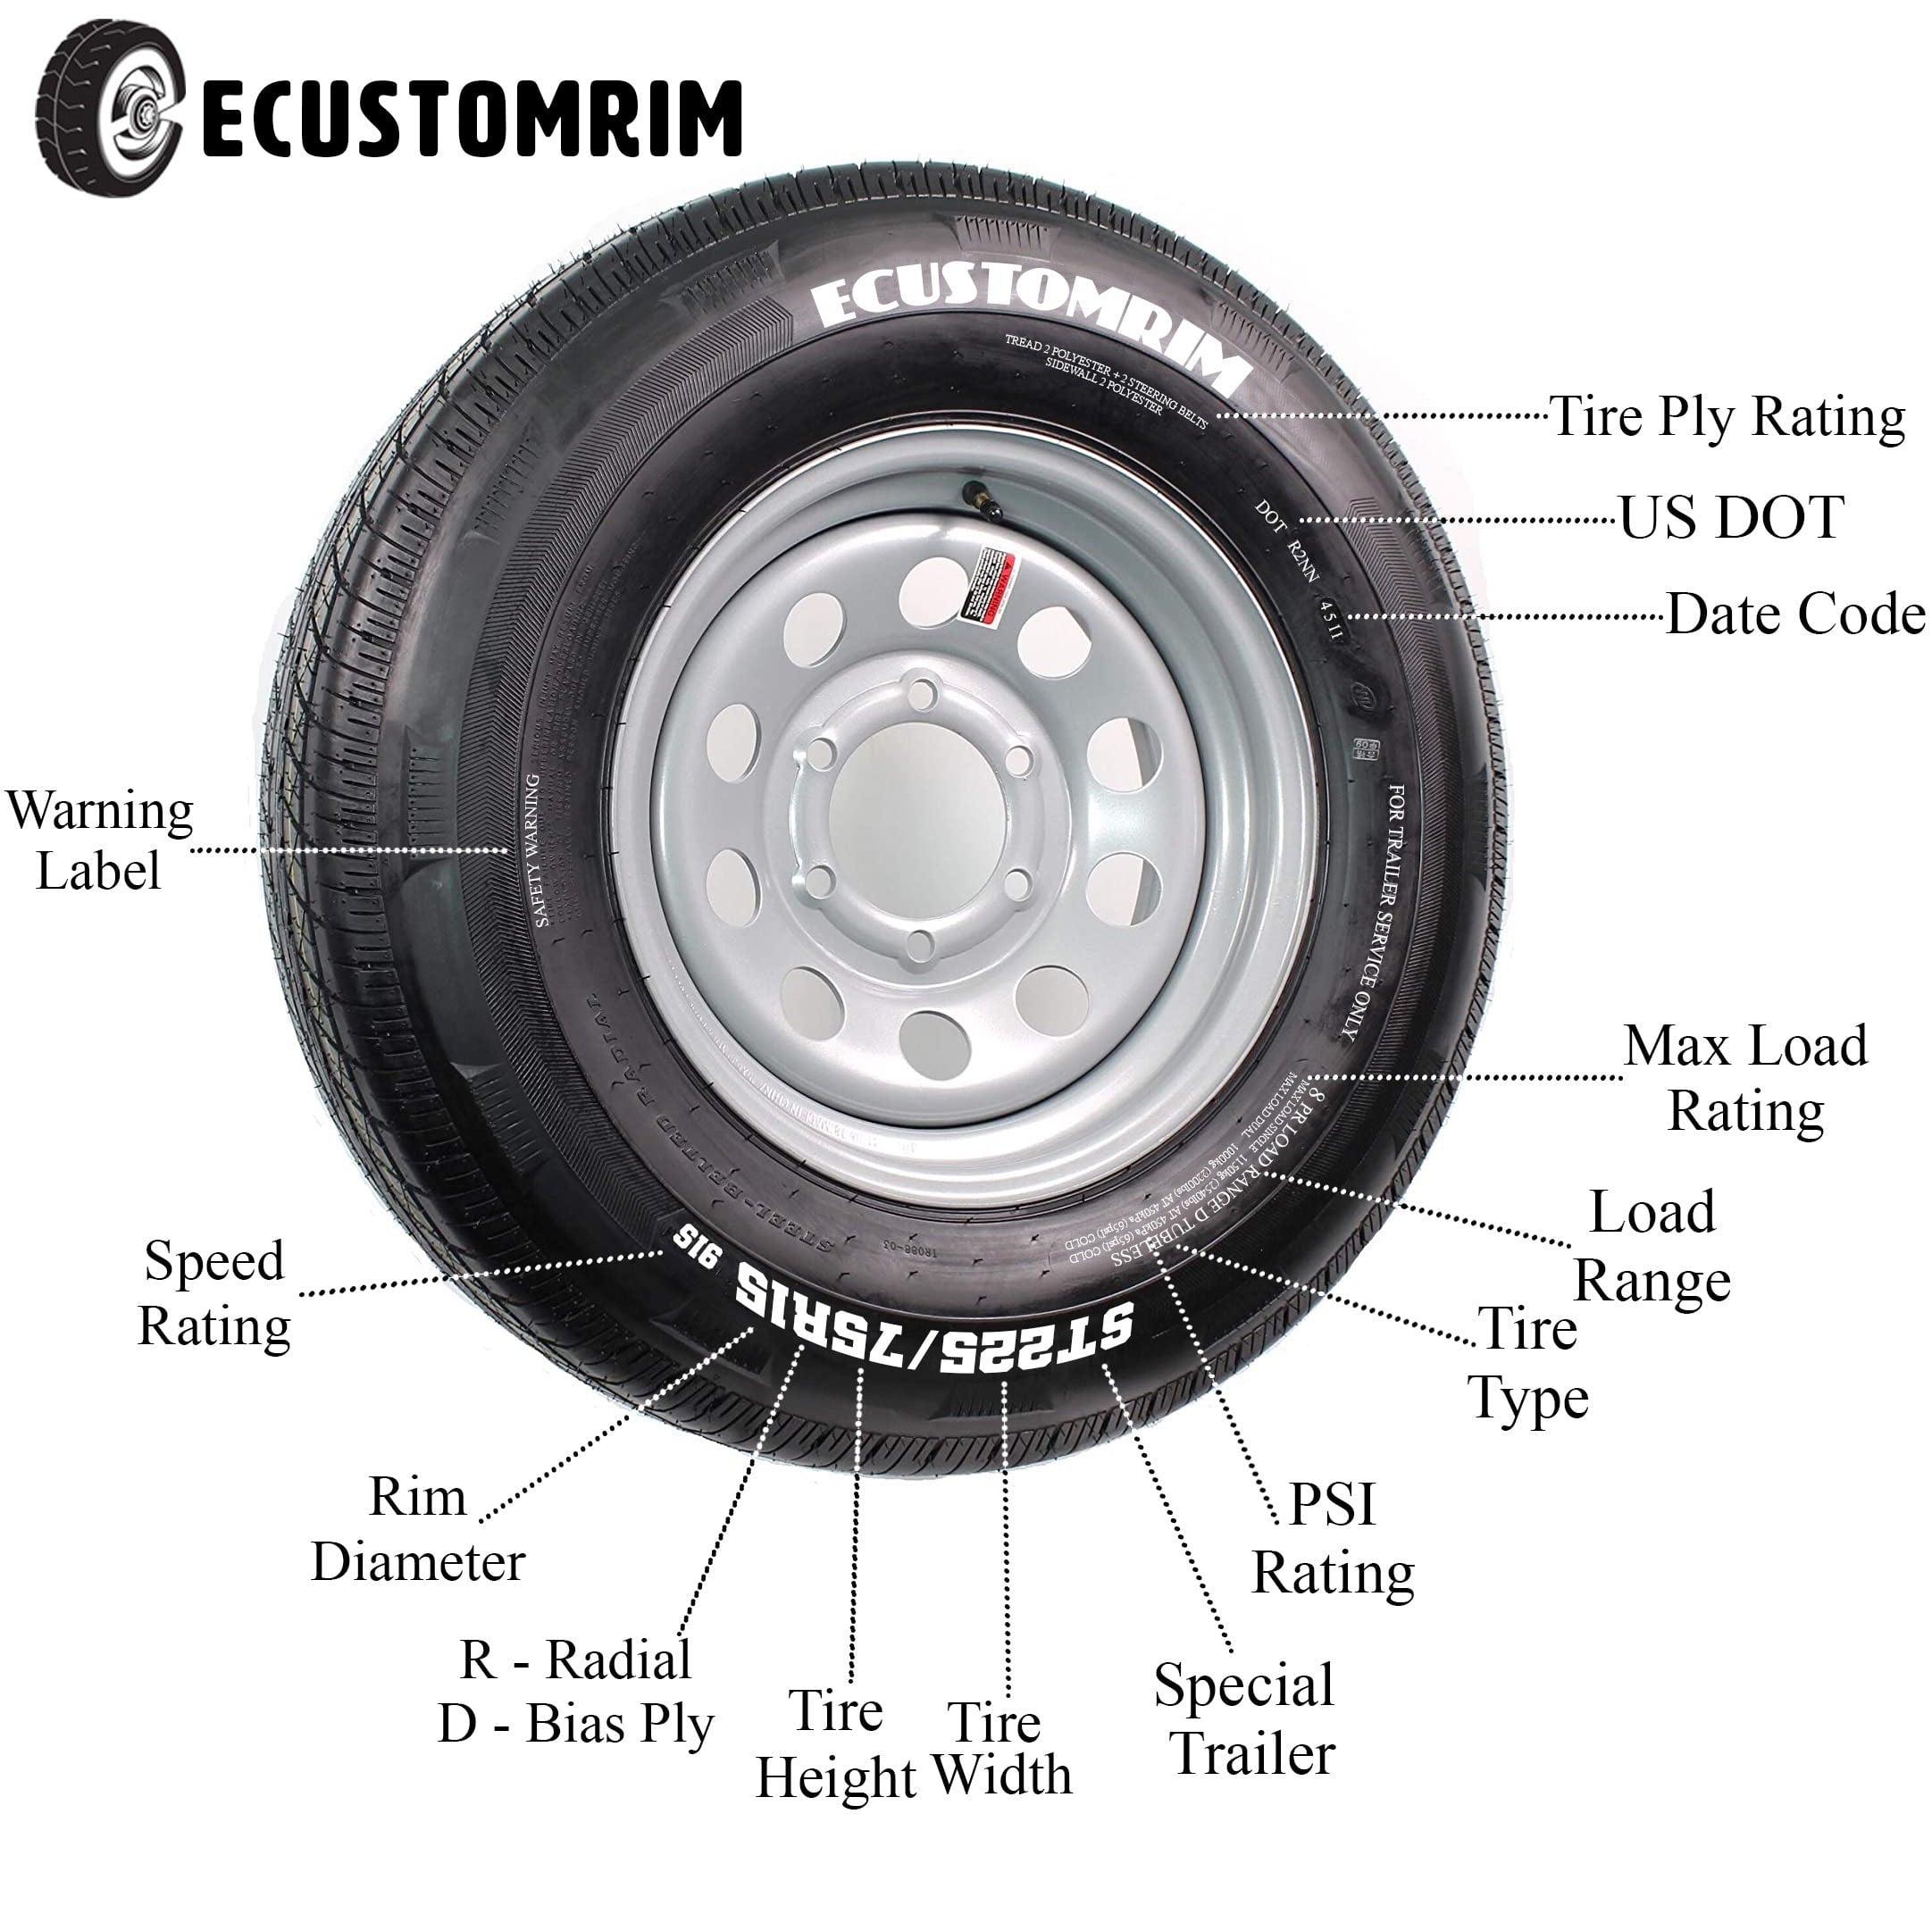 Trailer Tire On Rim ST205/75D15 F78-15 205/75-15 LRC 5 Lug Wheel Silver Mod